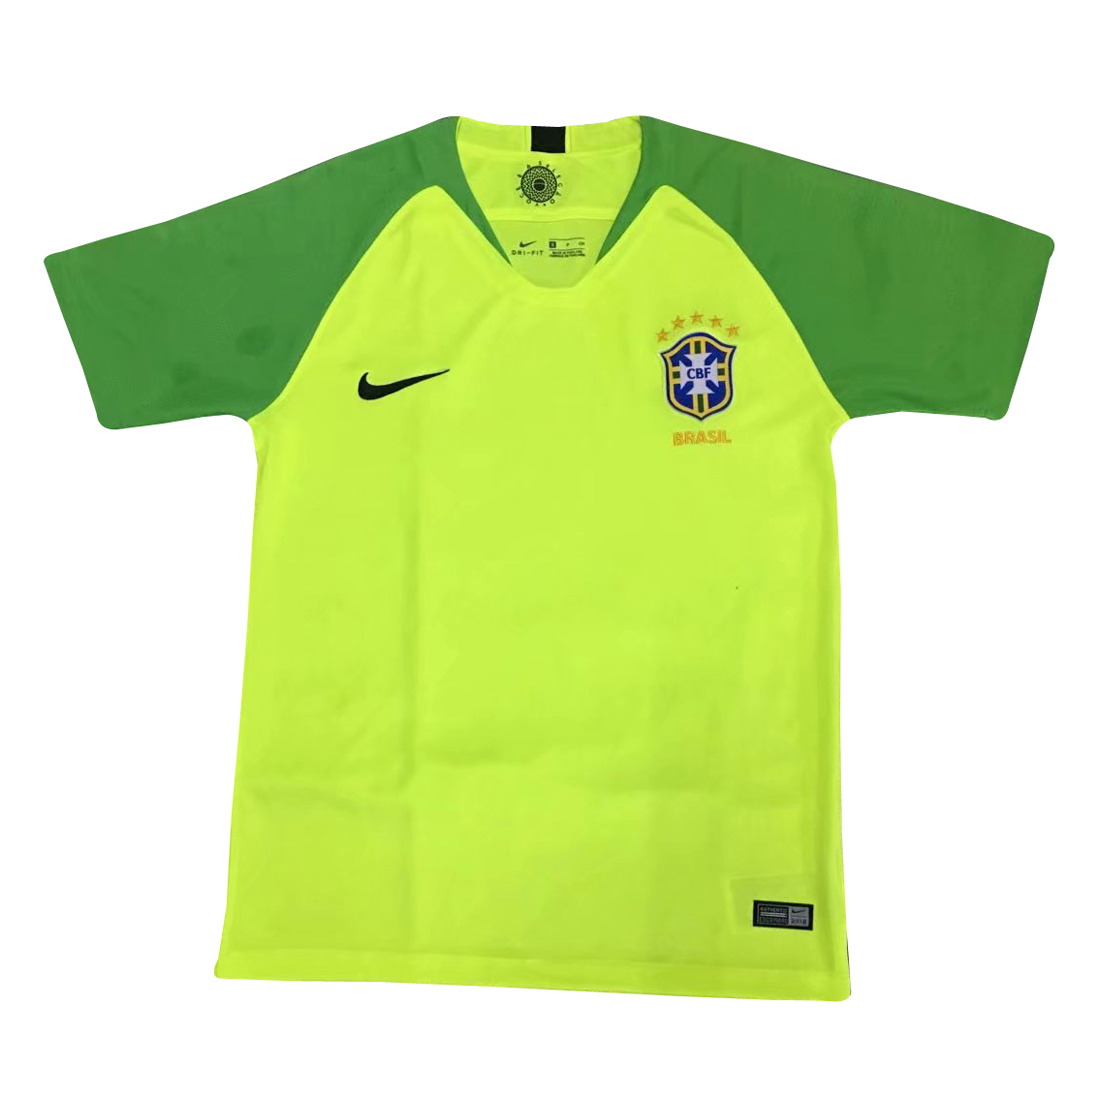 Brazil 2018 World Cup Green Goalkeeper 